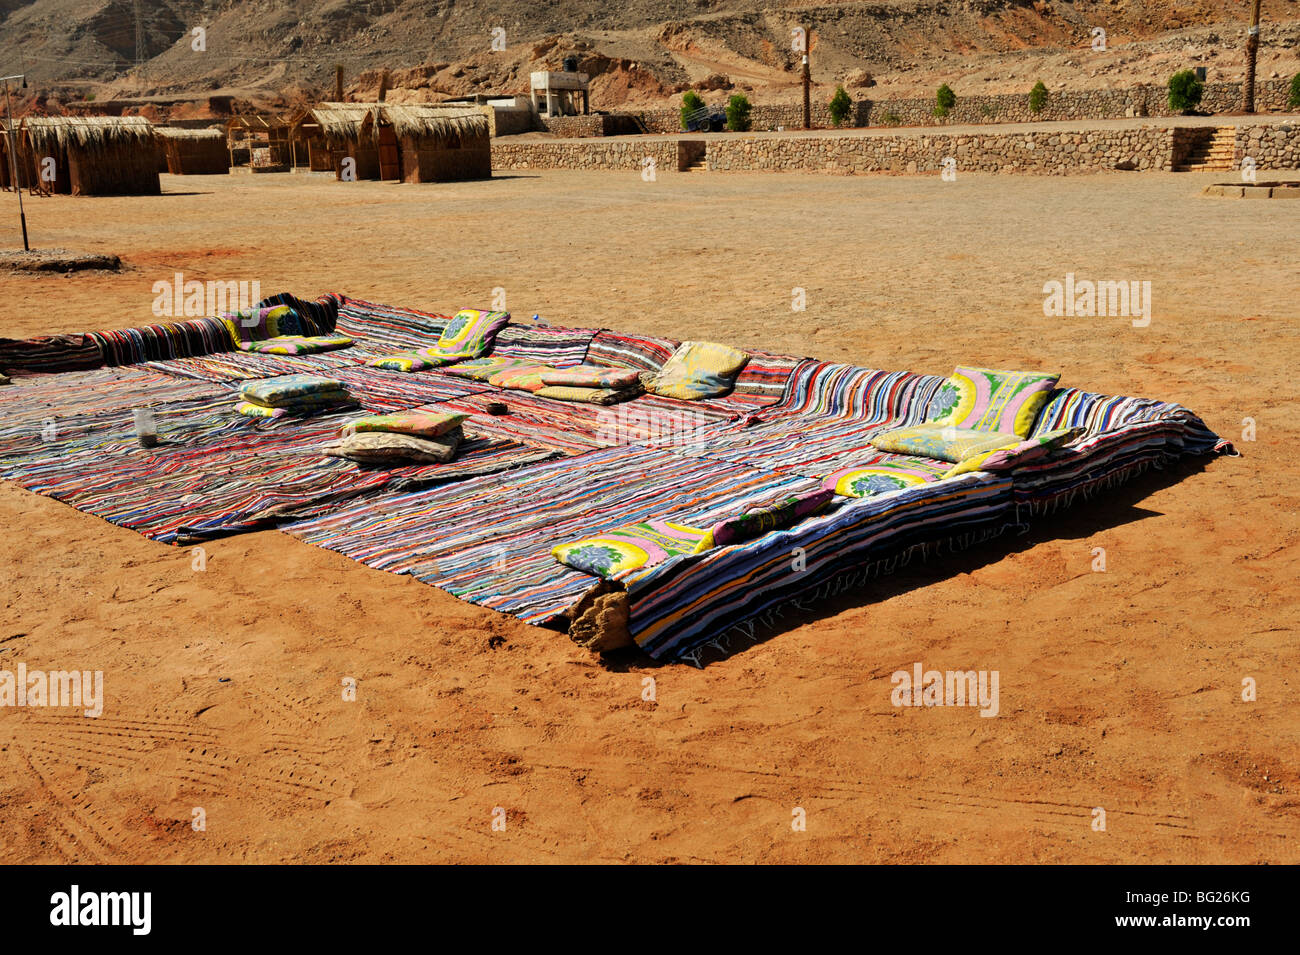 Bedouin campeggio turistico sulla spiaggia con tappeti a poggiare su, Nuweiba, Sinai, Egitto Foto Stock